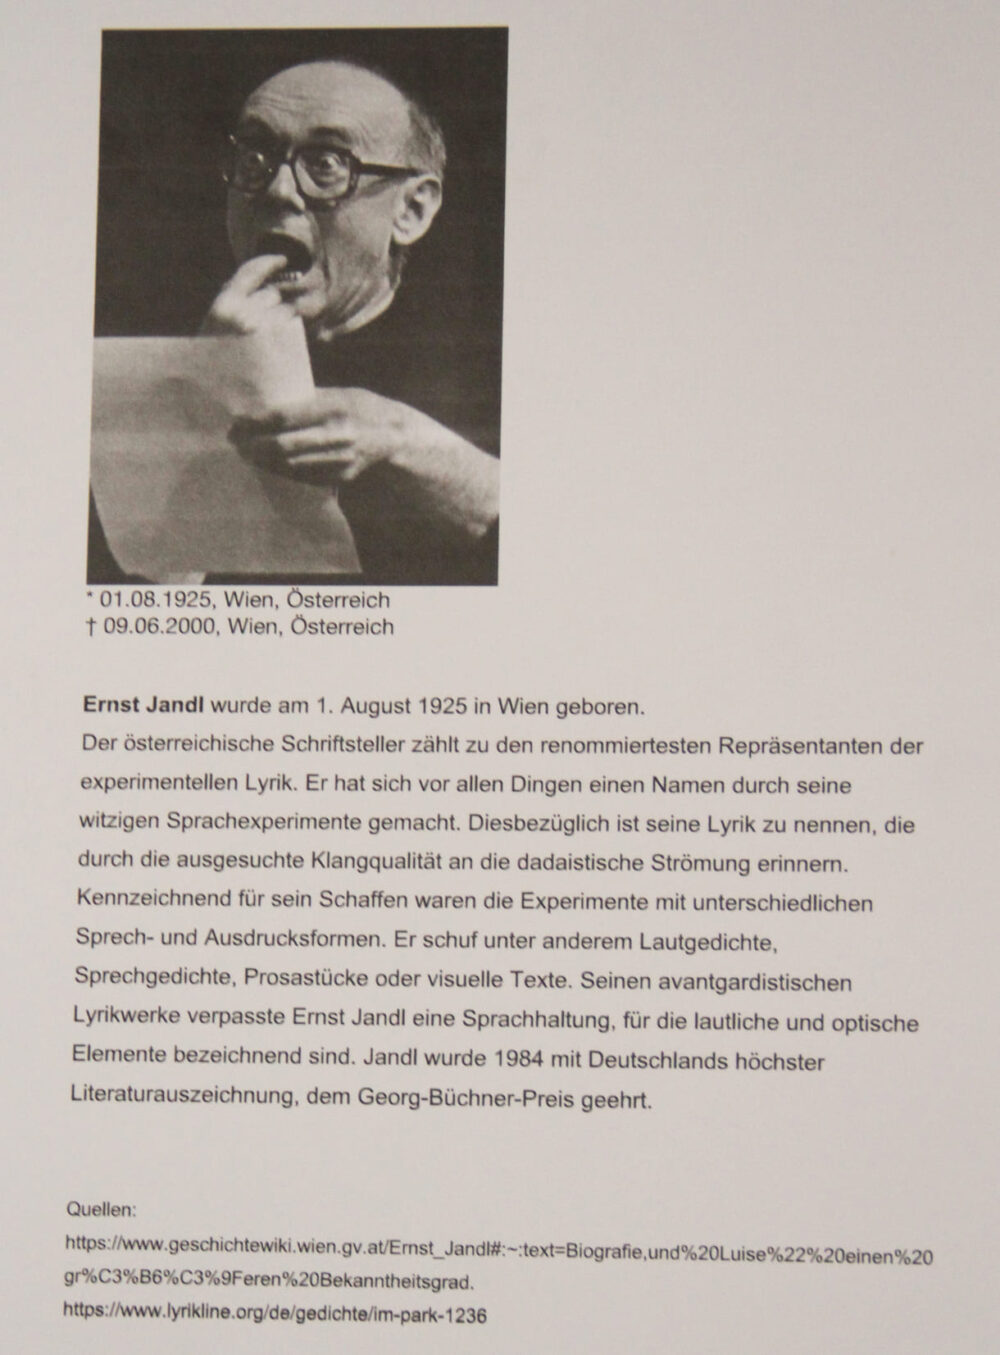 Aus der Aussstellung der Studierenden: Über den wortkünstlerischen Dichter Ernst Jandl